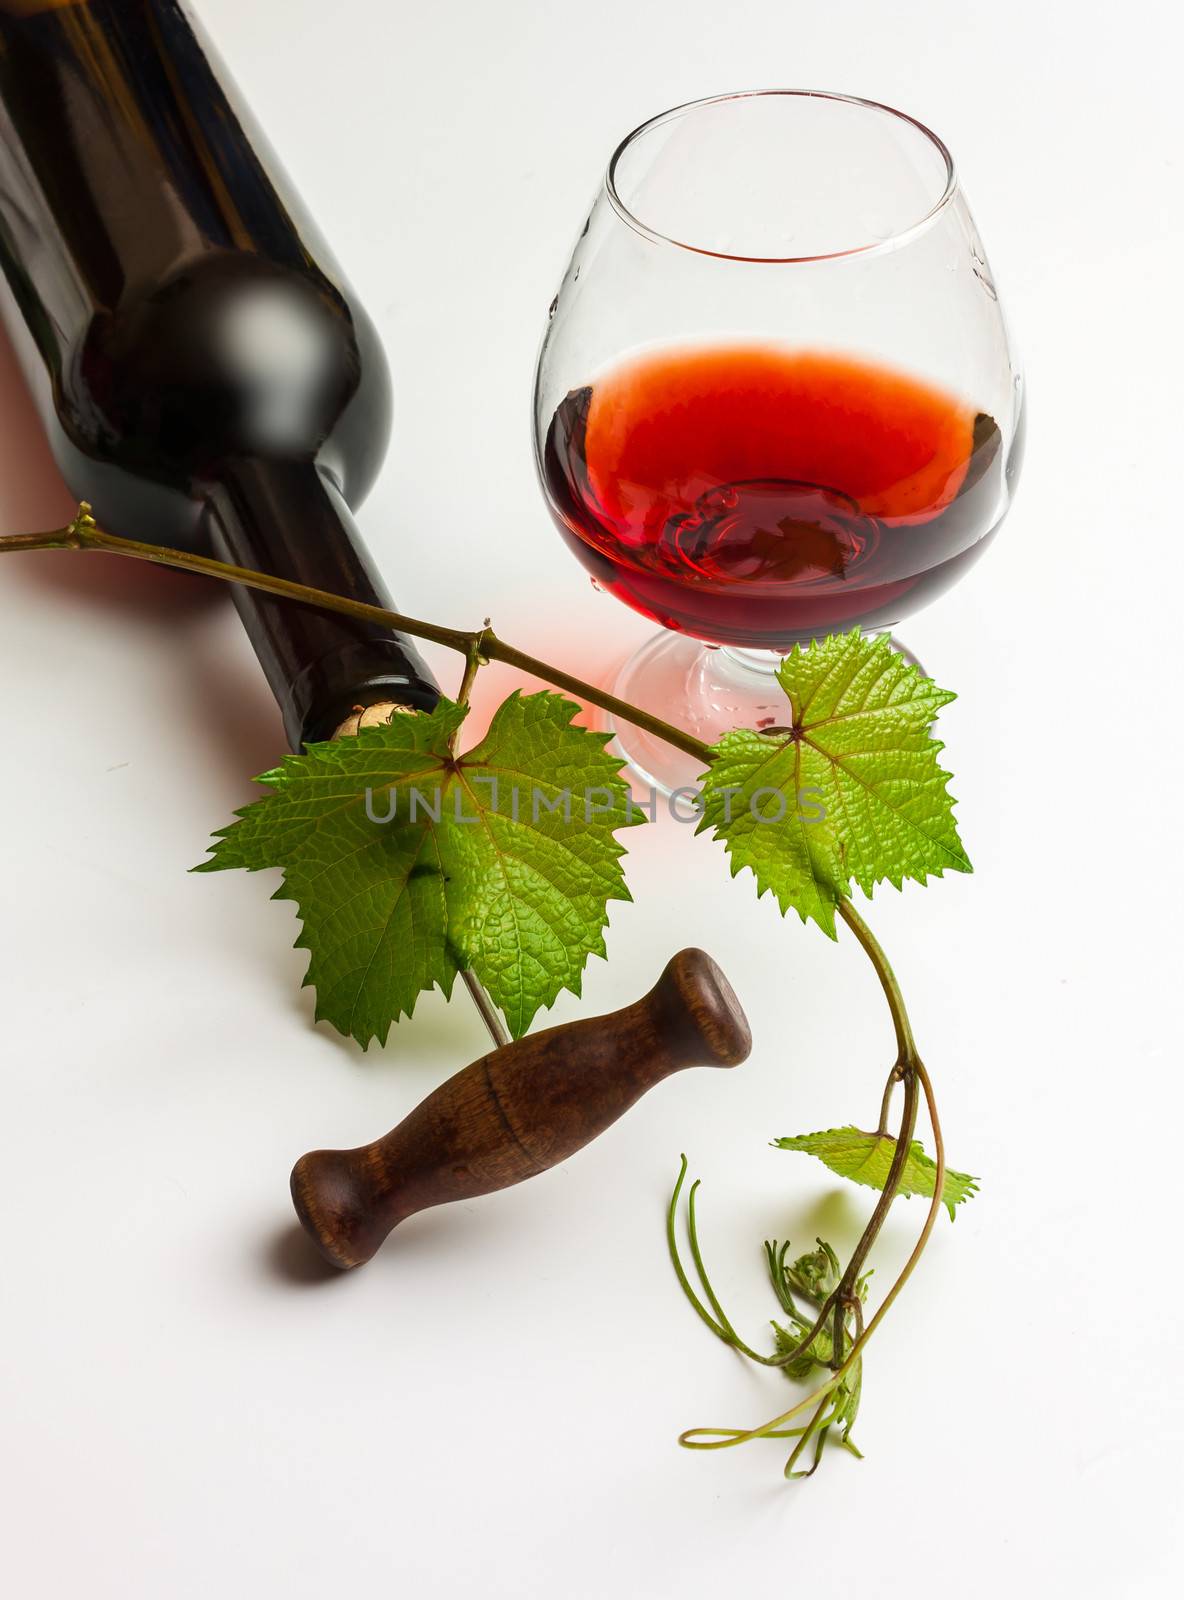 bottle of wine by oleg_zhukov